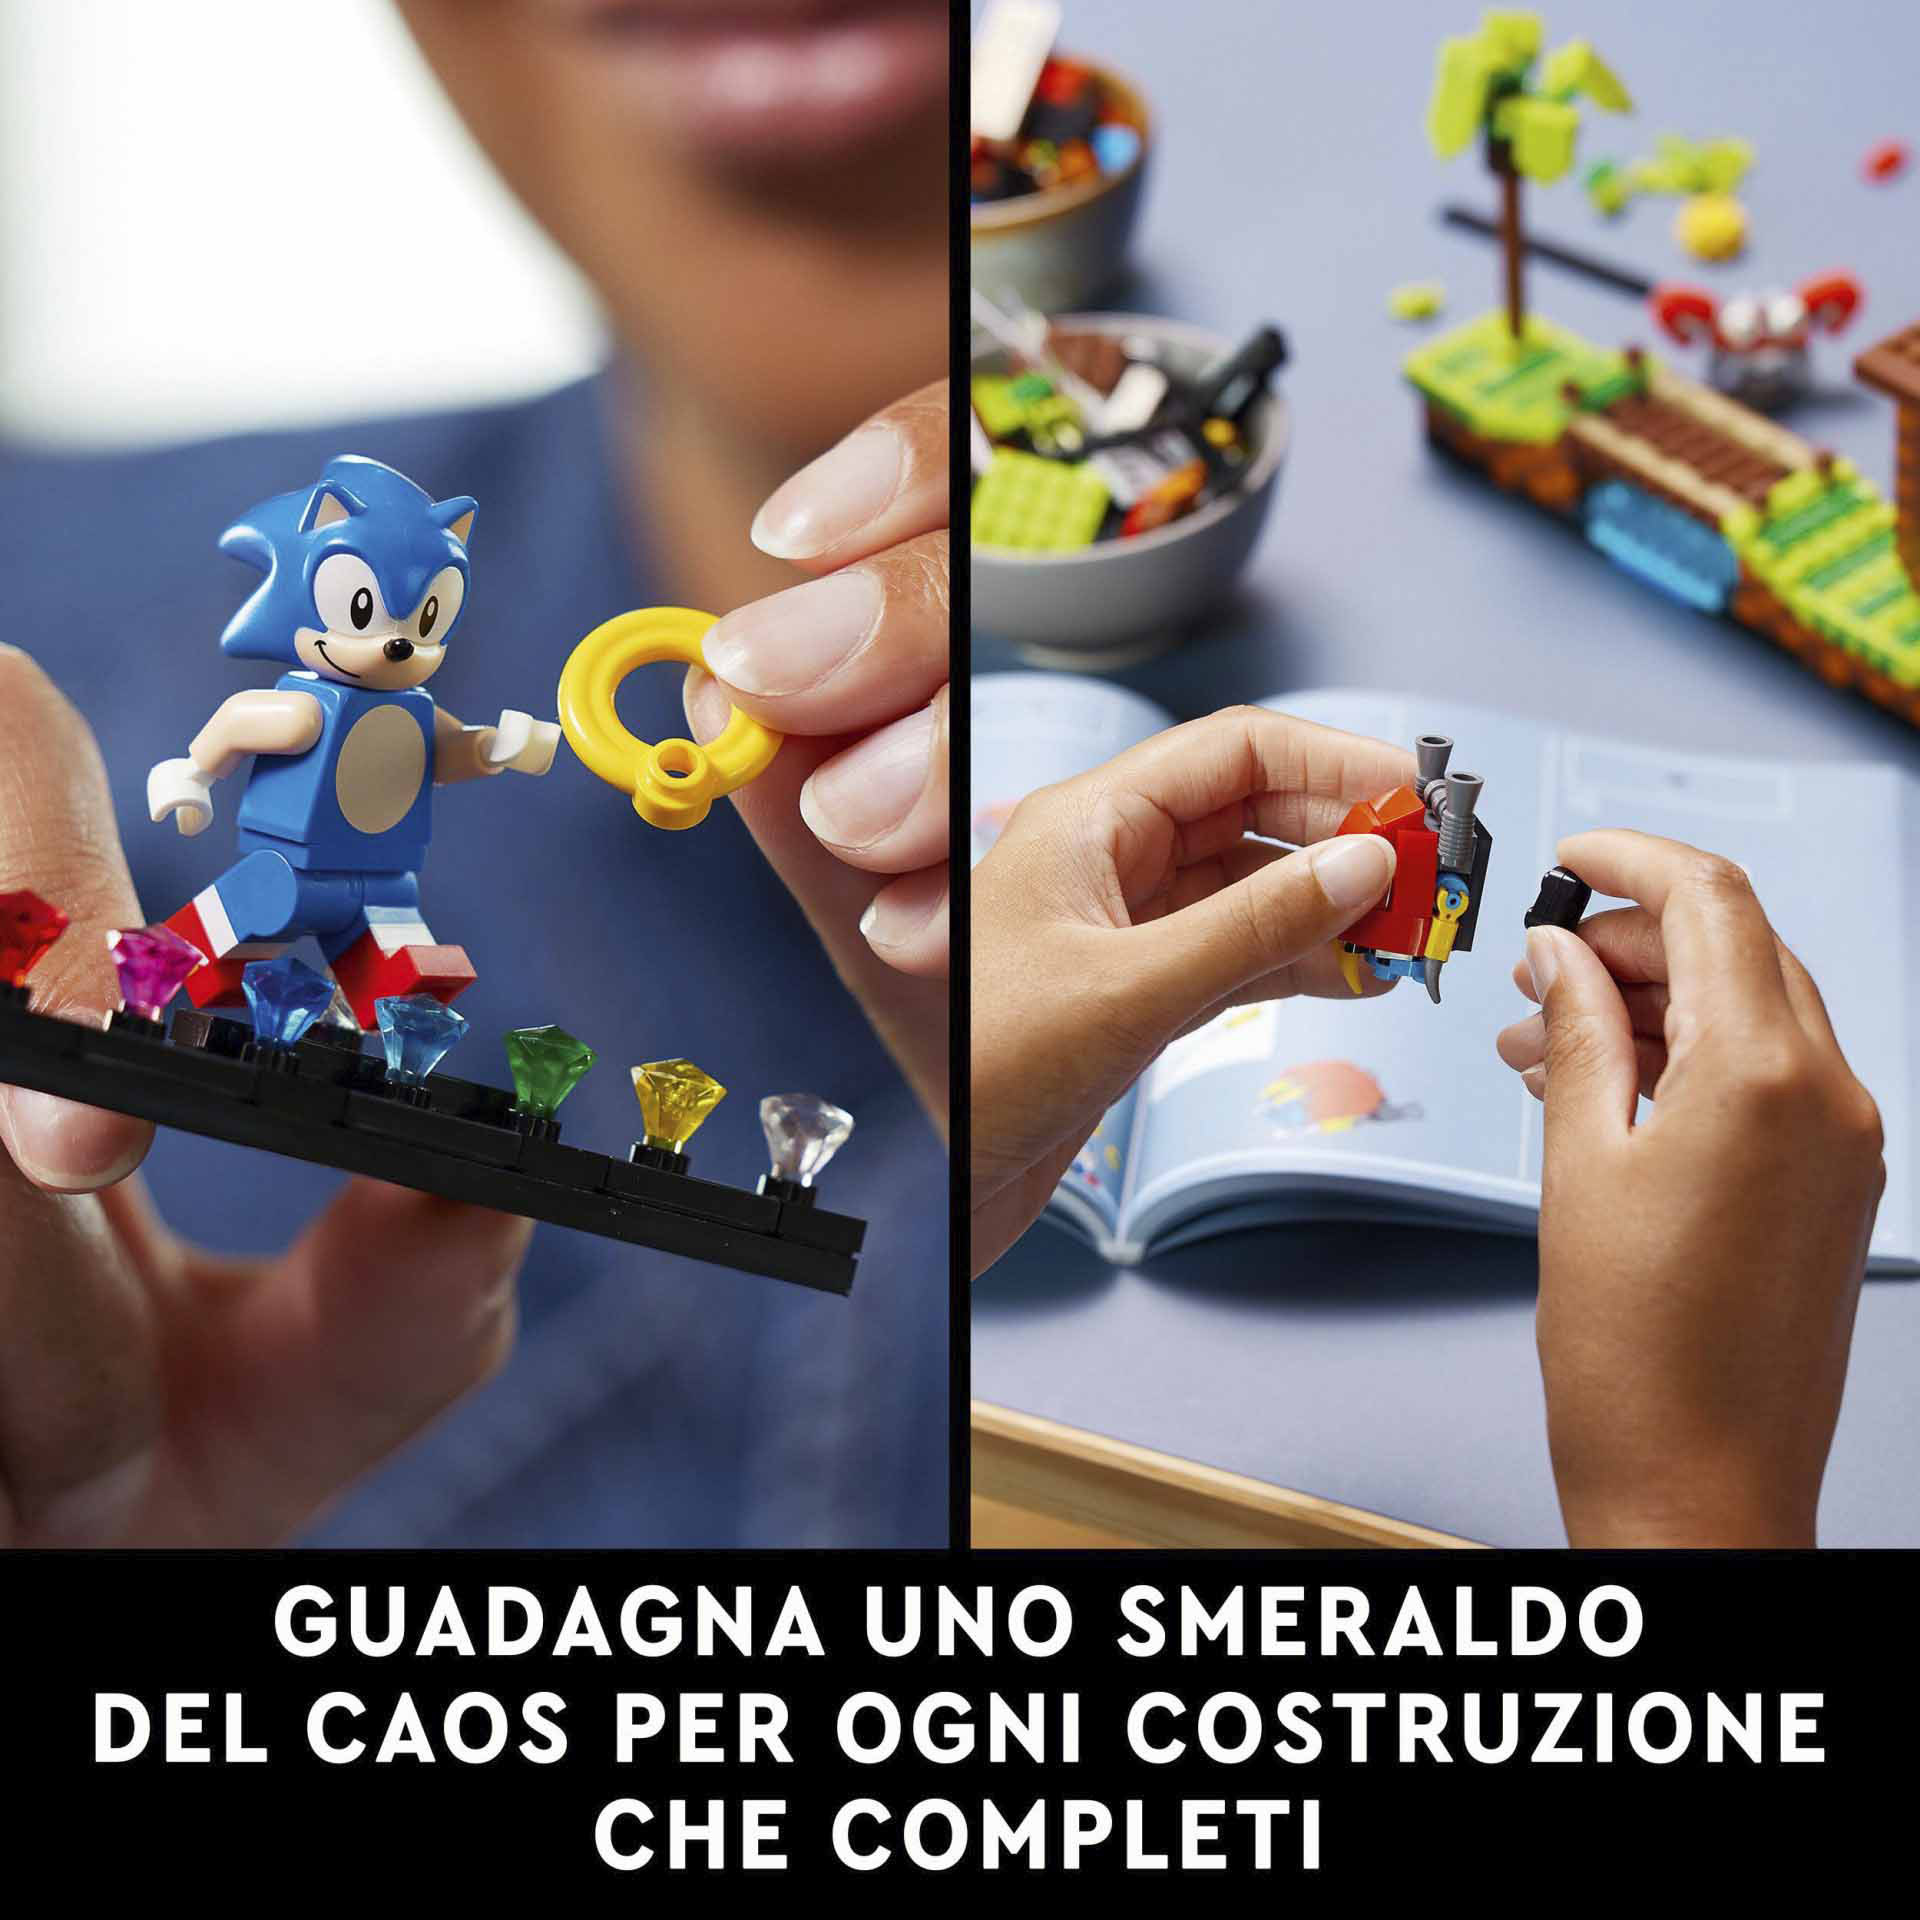 LEGO Ideas Sonic the Hedgehog - Green Hill Zone, Modello da Costruire per Adulti 21331, , large